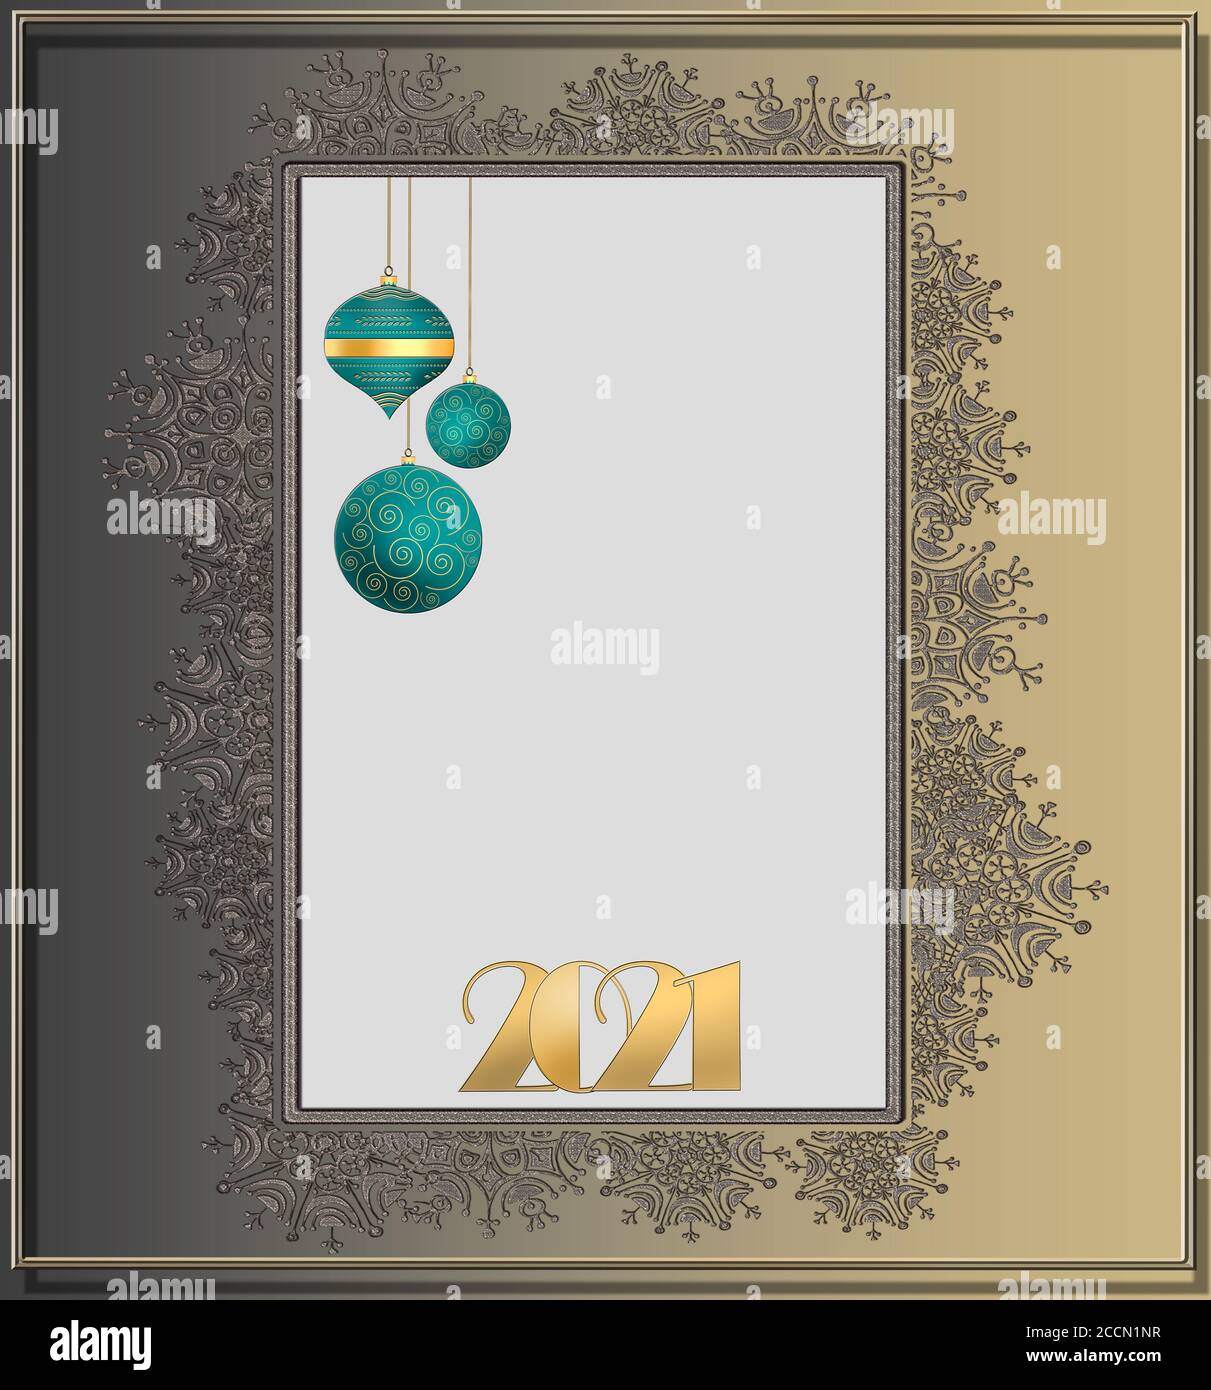 2021 bonne année de fond. Or numéro 2021, boules vertes suspendues sur fond doré avec bordure en flocons de neige. Circulaire des fêtes, invitation à accueillir Banque D'Images